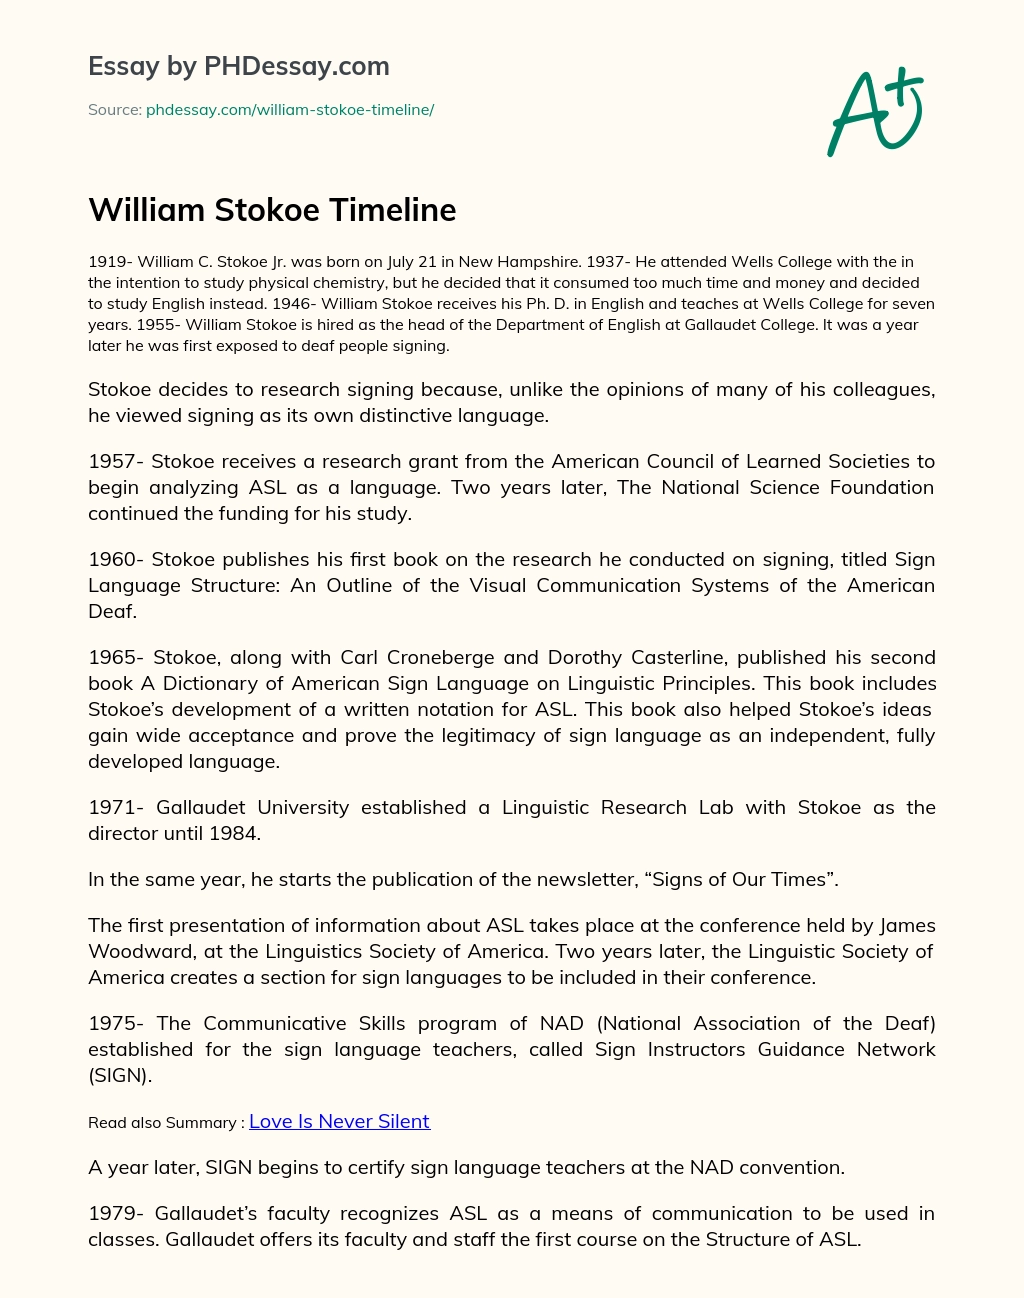 William Stokoe Timeline essay